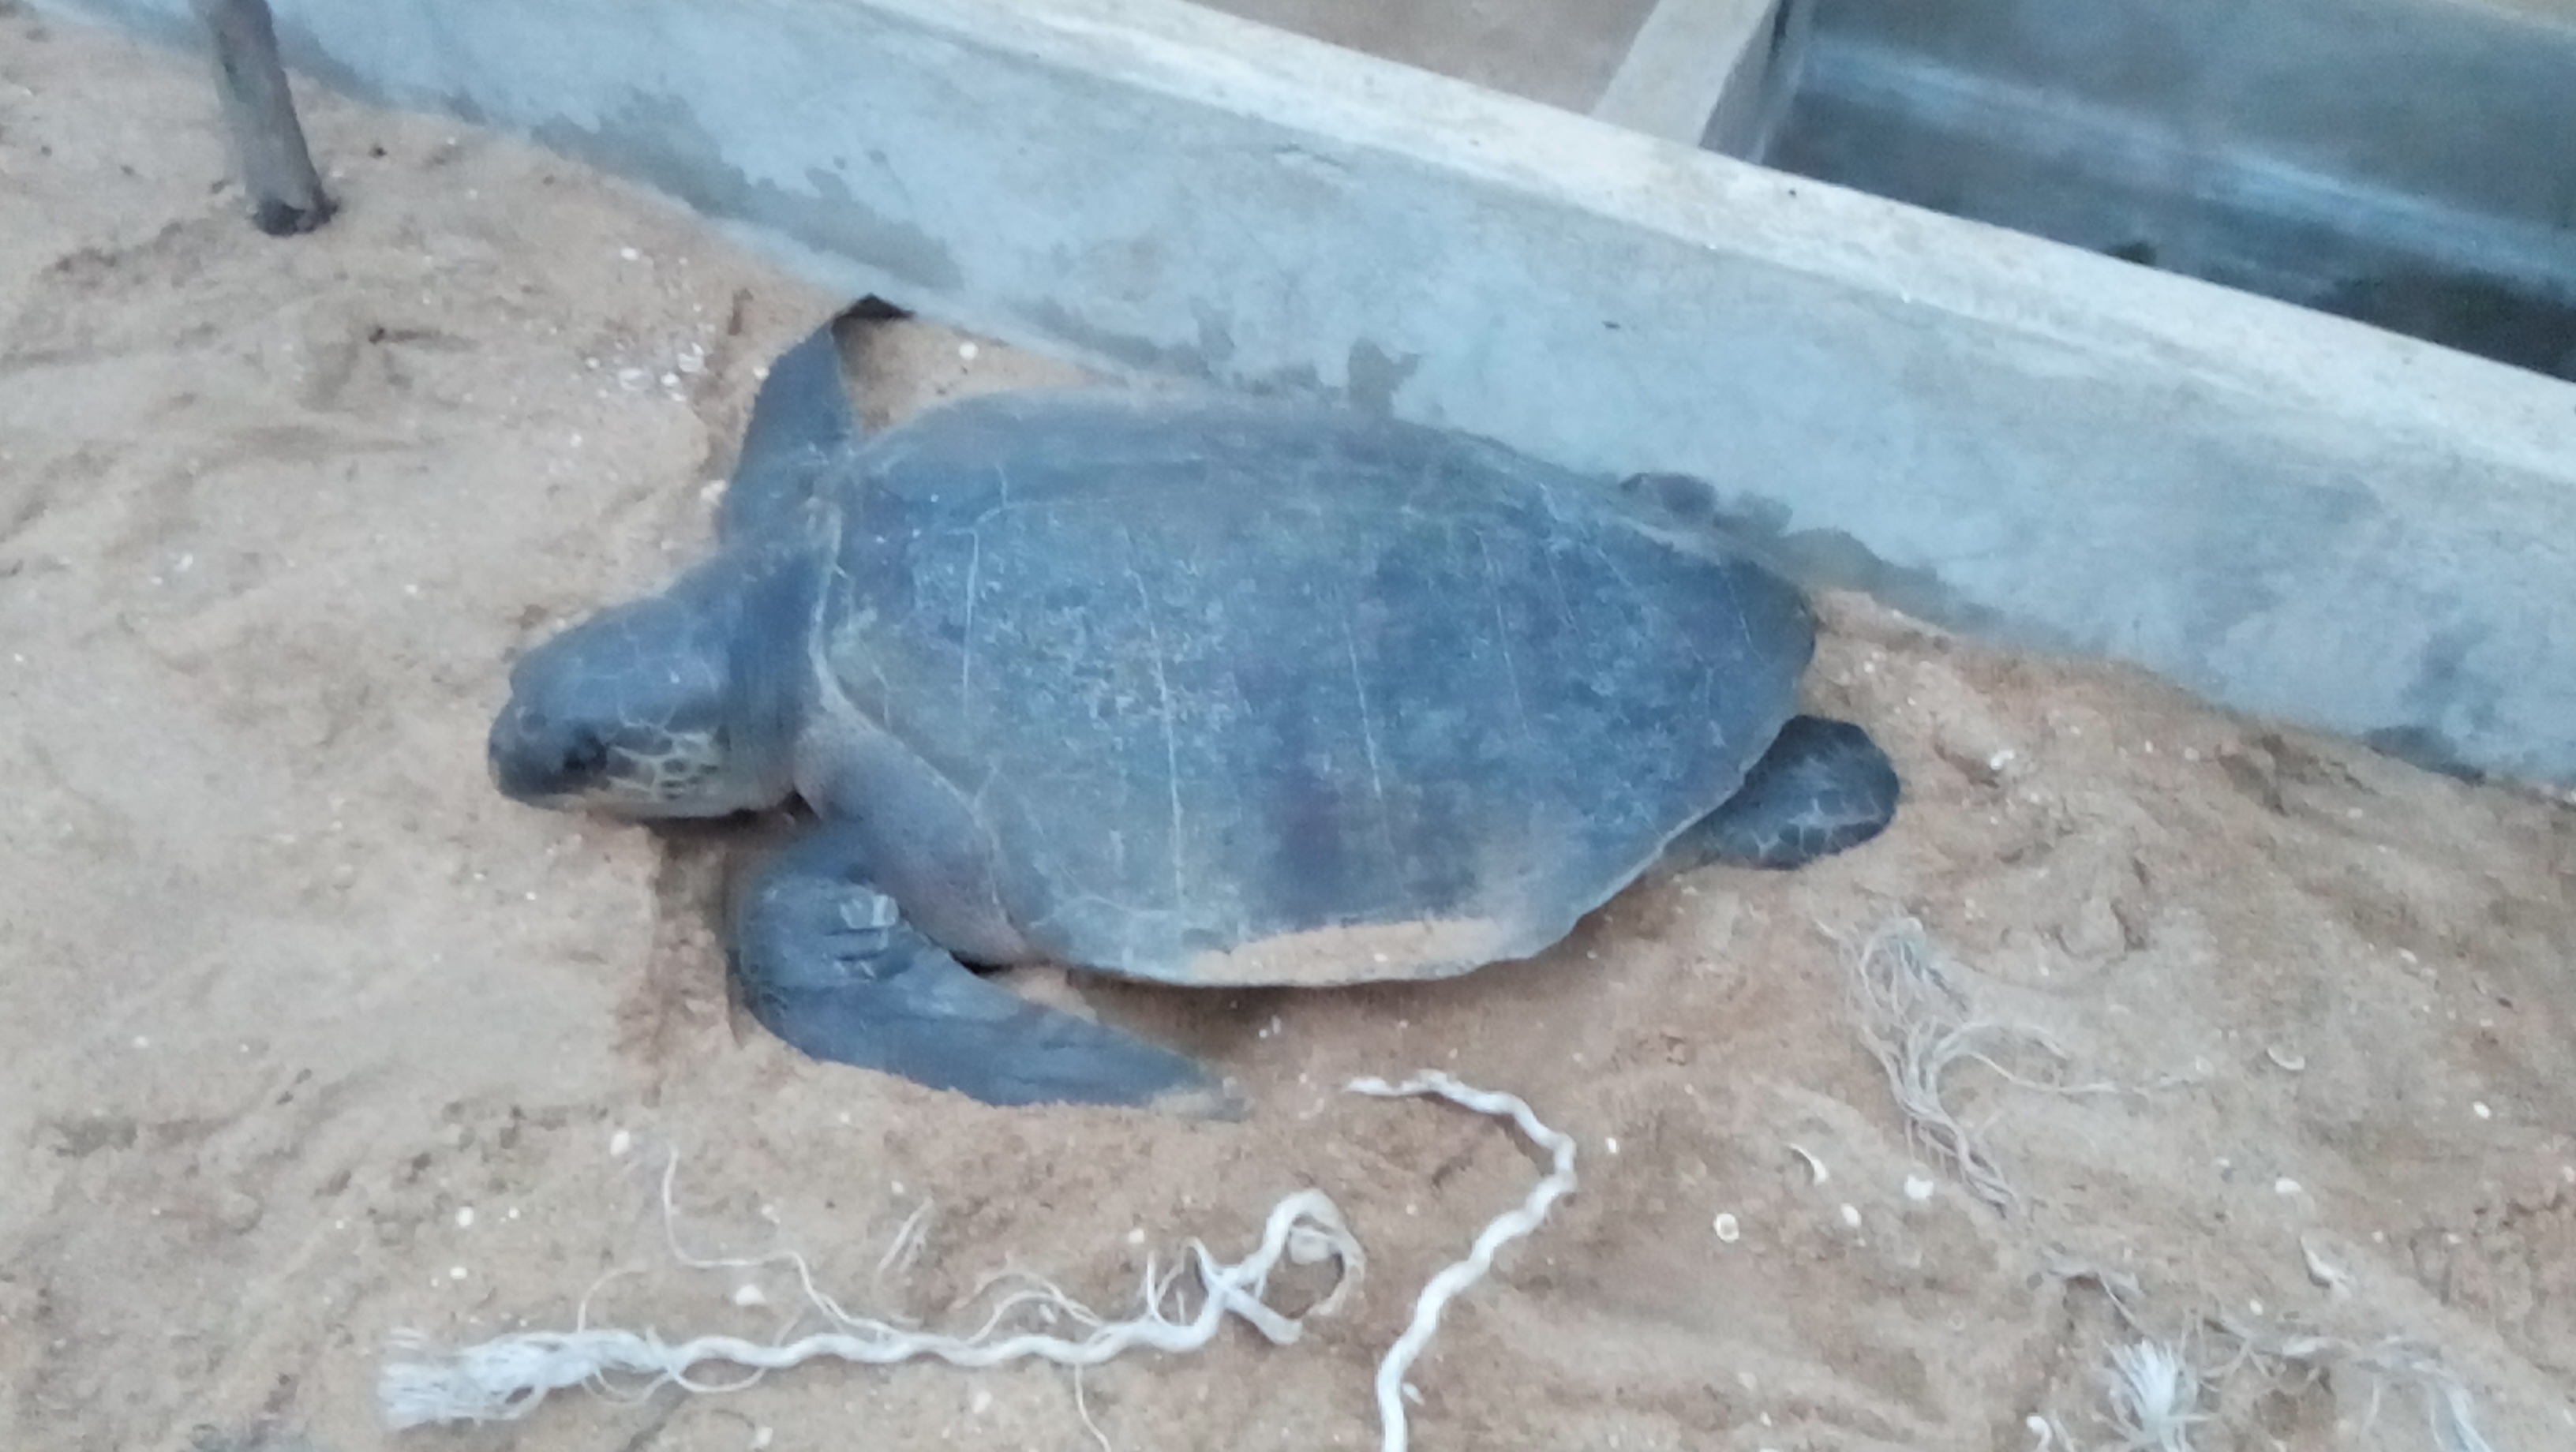 Lire la suite à propos de l’article Protection des espèces marines de la Réserve la Bouche du Roy, une tortue olivâtre sauvée !!